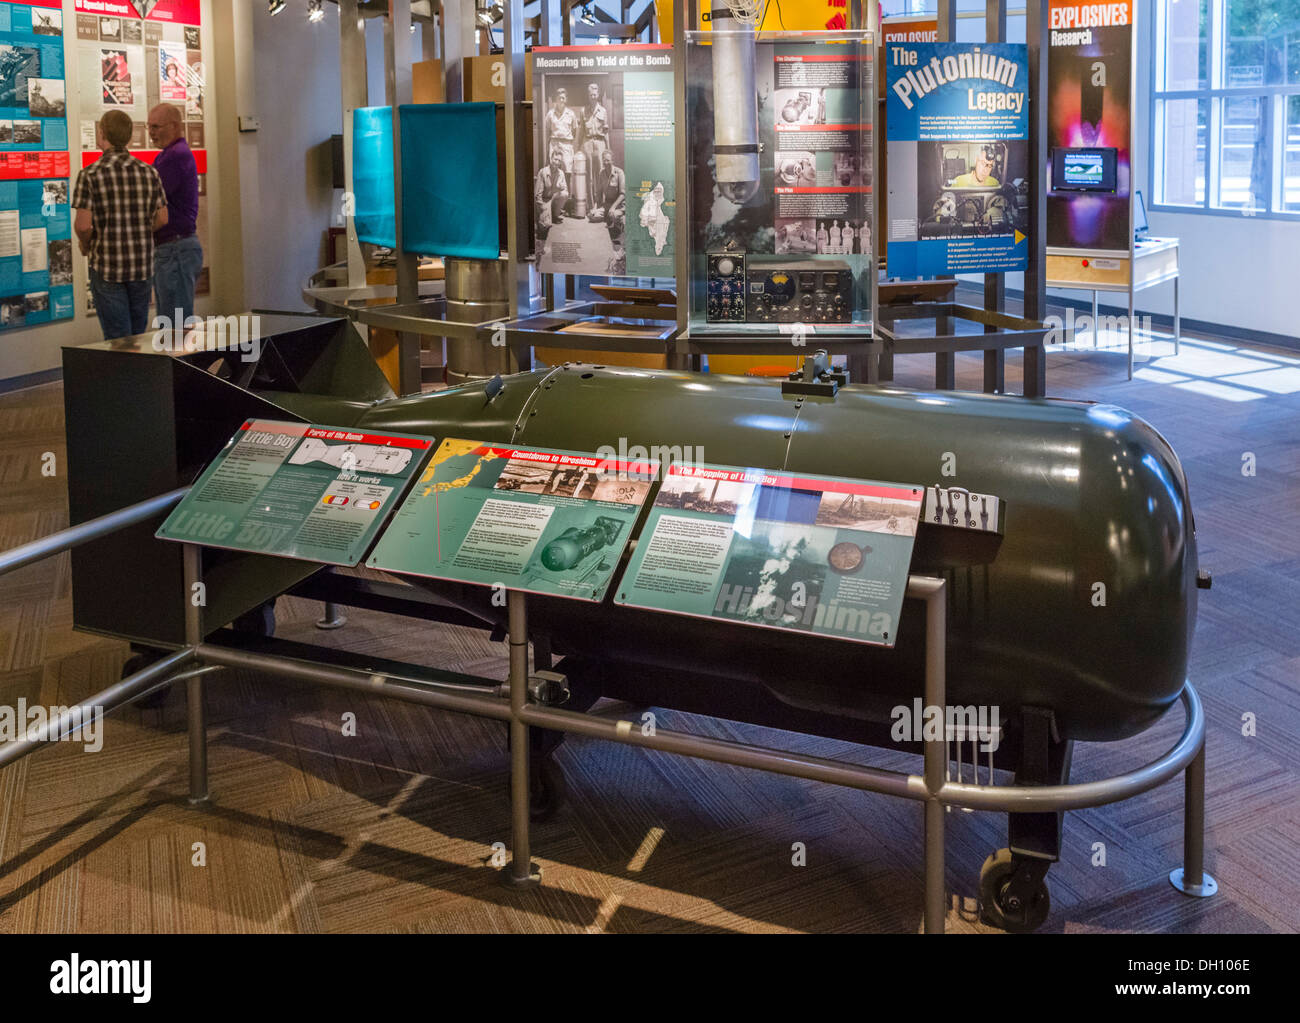 Modello della bomba atomica 'Little Boy' scesa in Giappone nella seconda guerra mondiale, il Bradbury Science Museum di Los Alamos, Nuovo Messico, STATI UNITI D'AMERICA Foto Stock